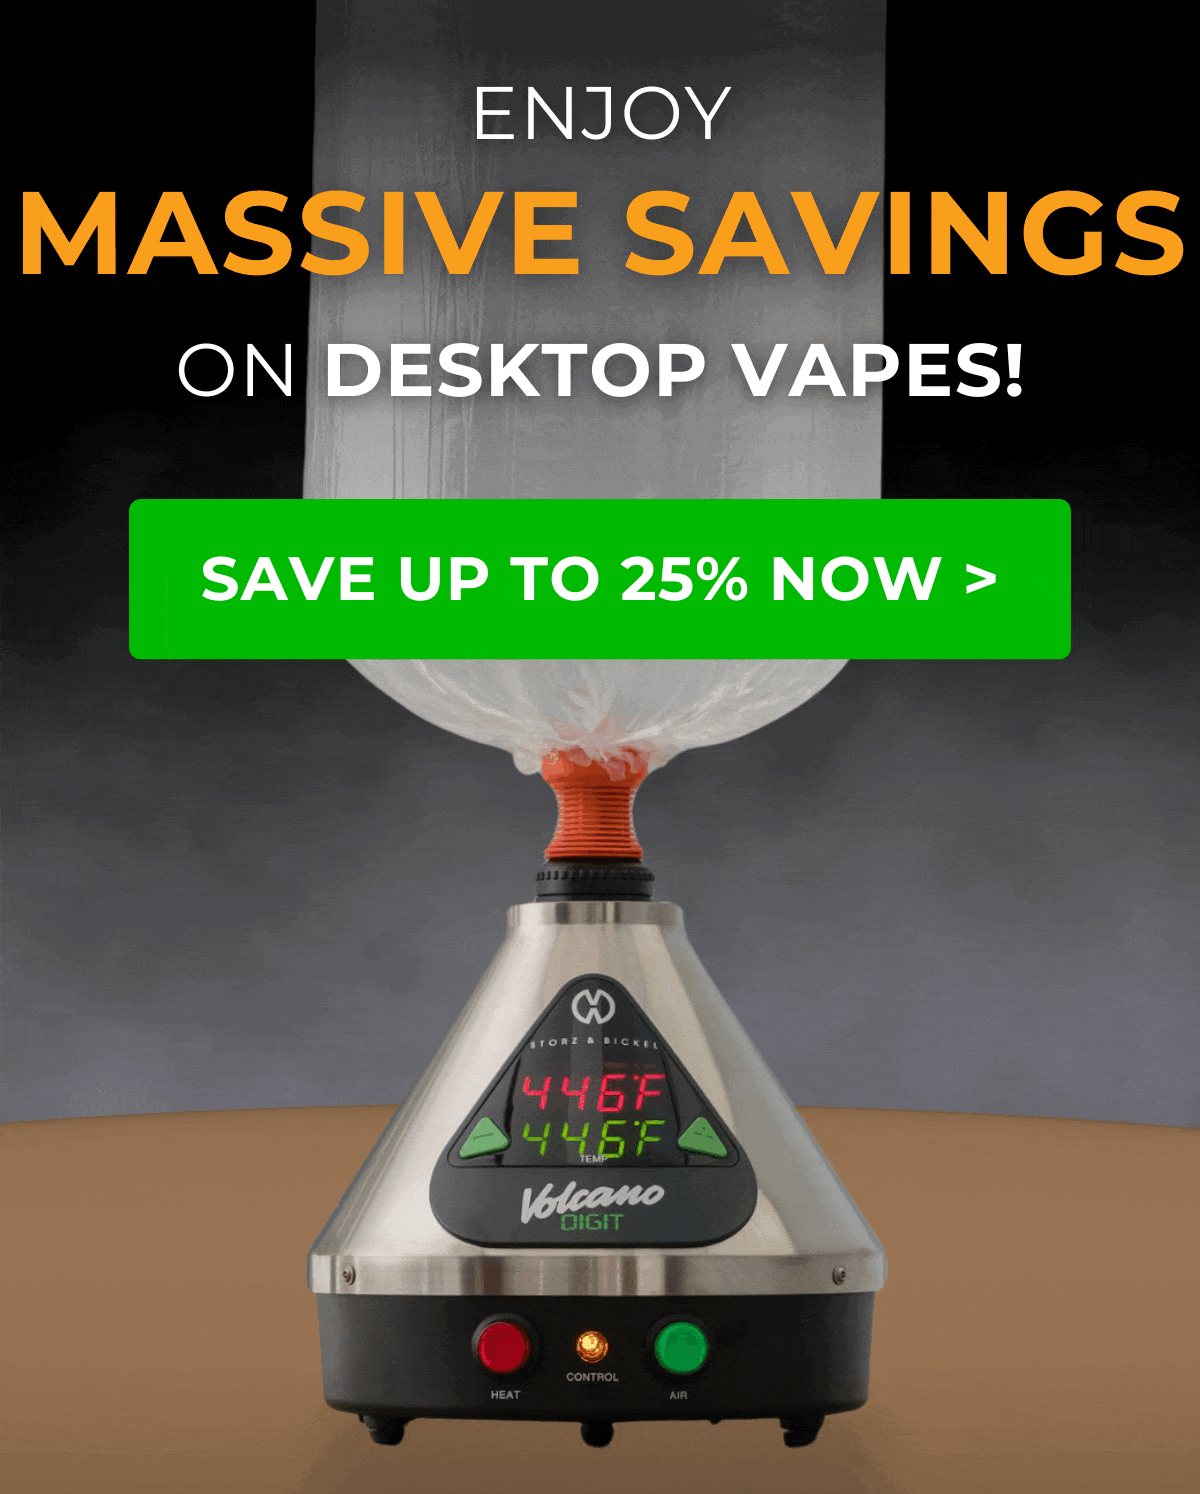 Get up to 25% OFF desktop vapes!